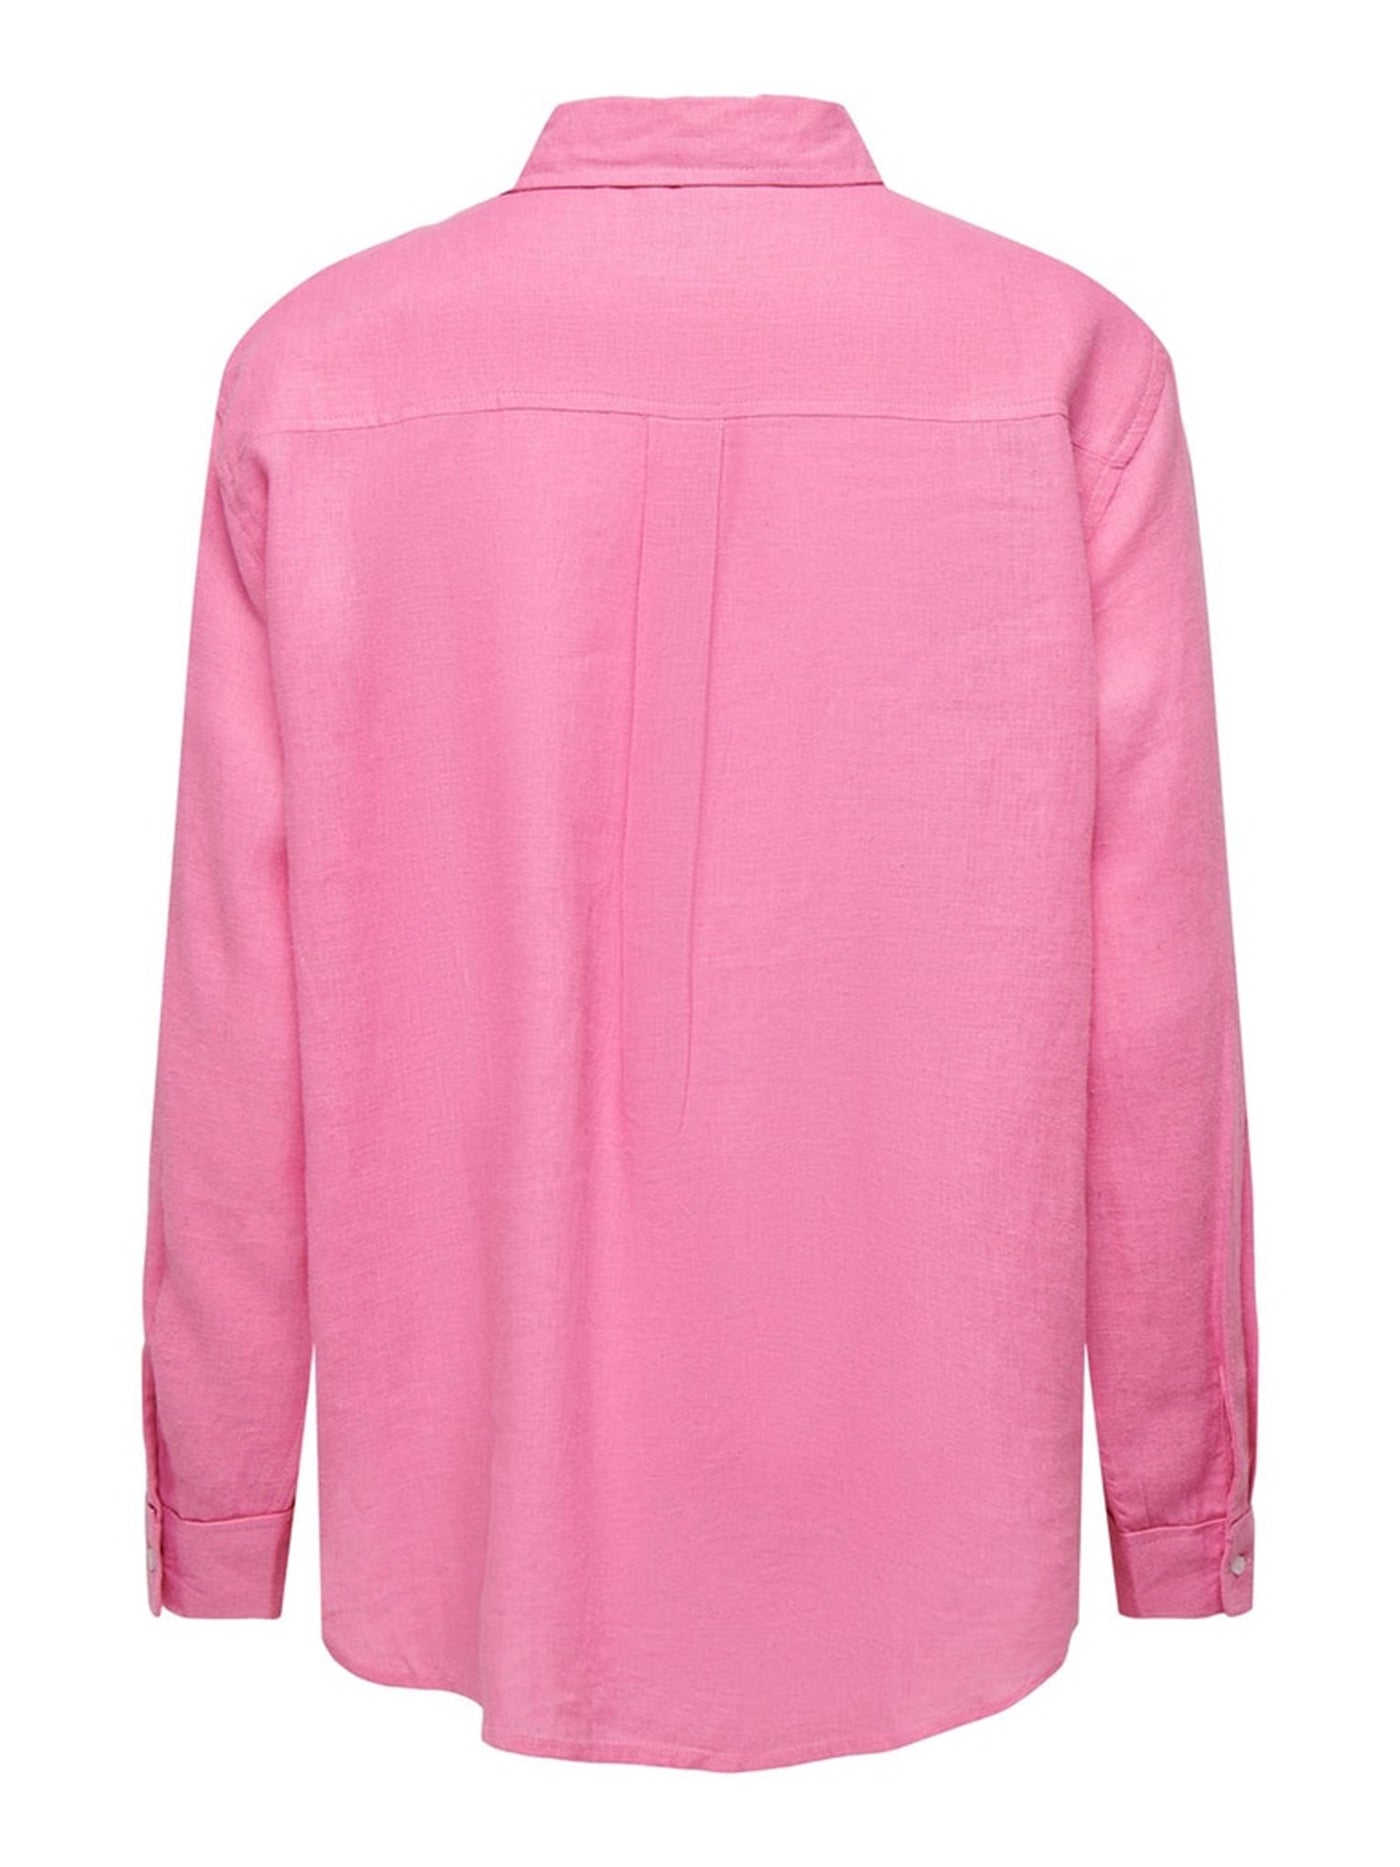 Tokyo Linen Skjorte - Sachet Pink - ONLY 5